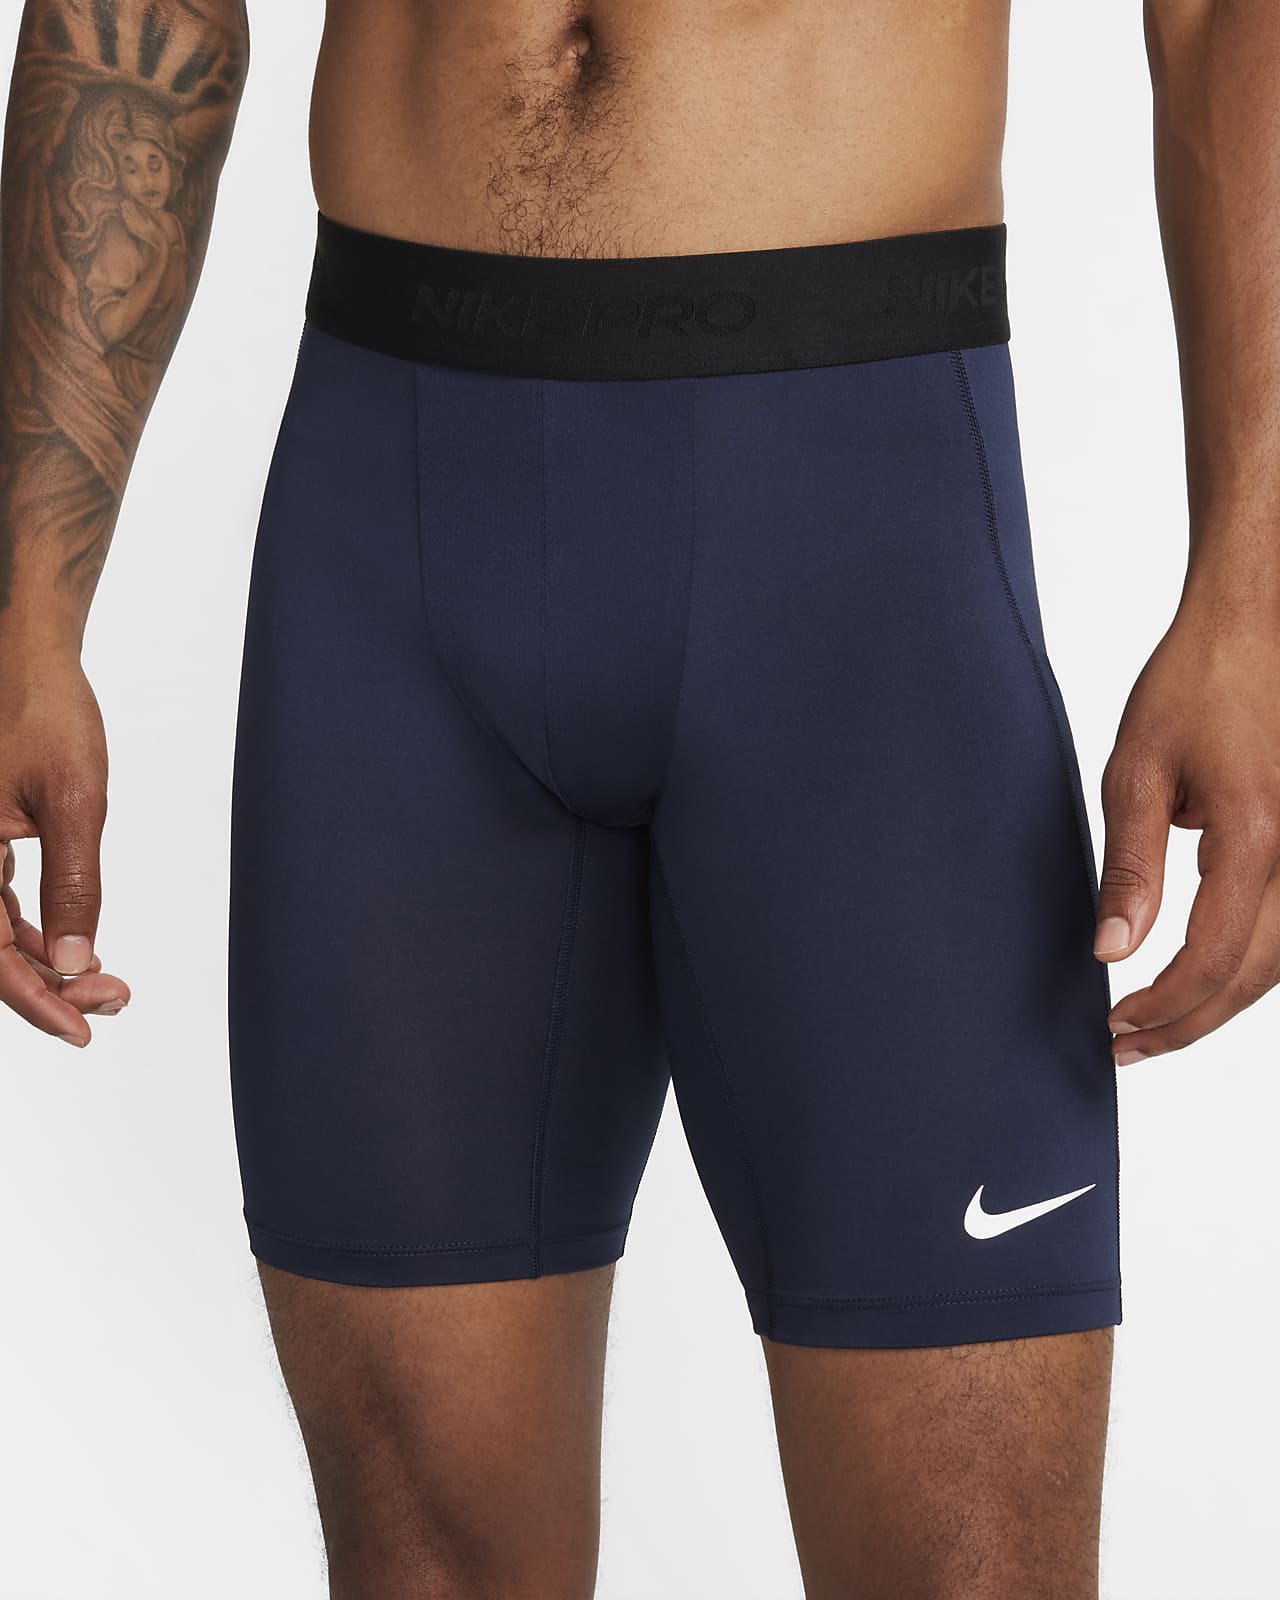 Nike Pro Core 6 Base Layer Shorts Mens Black, £28.00